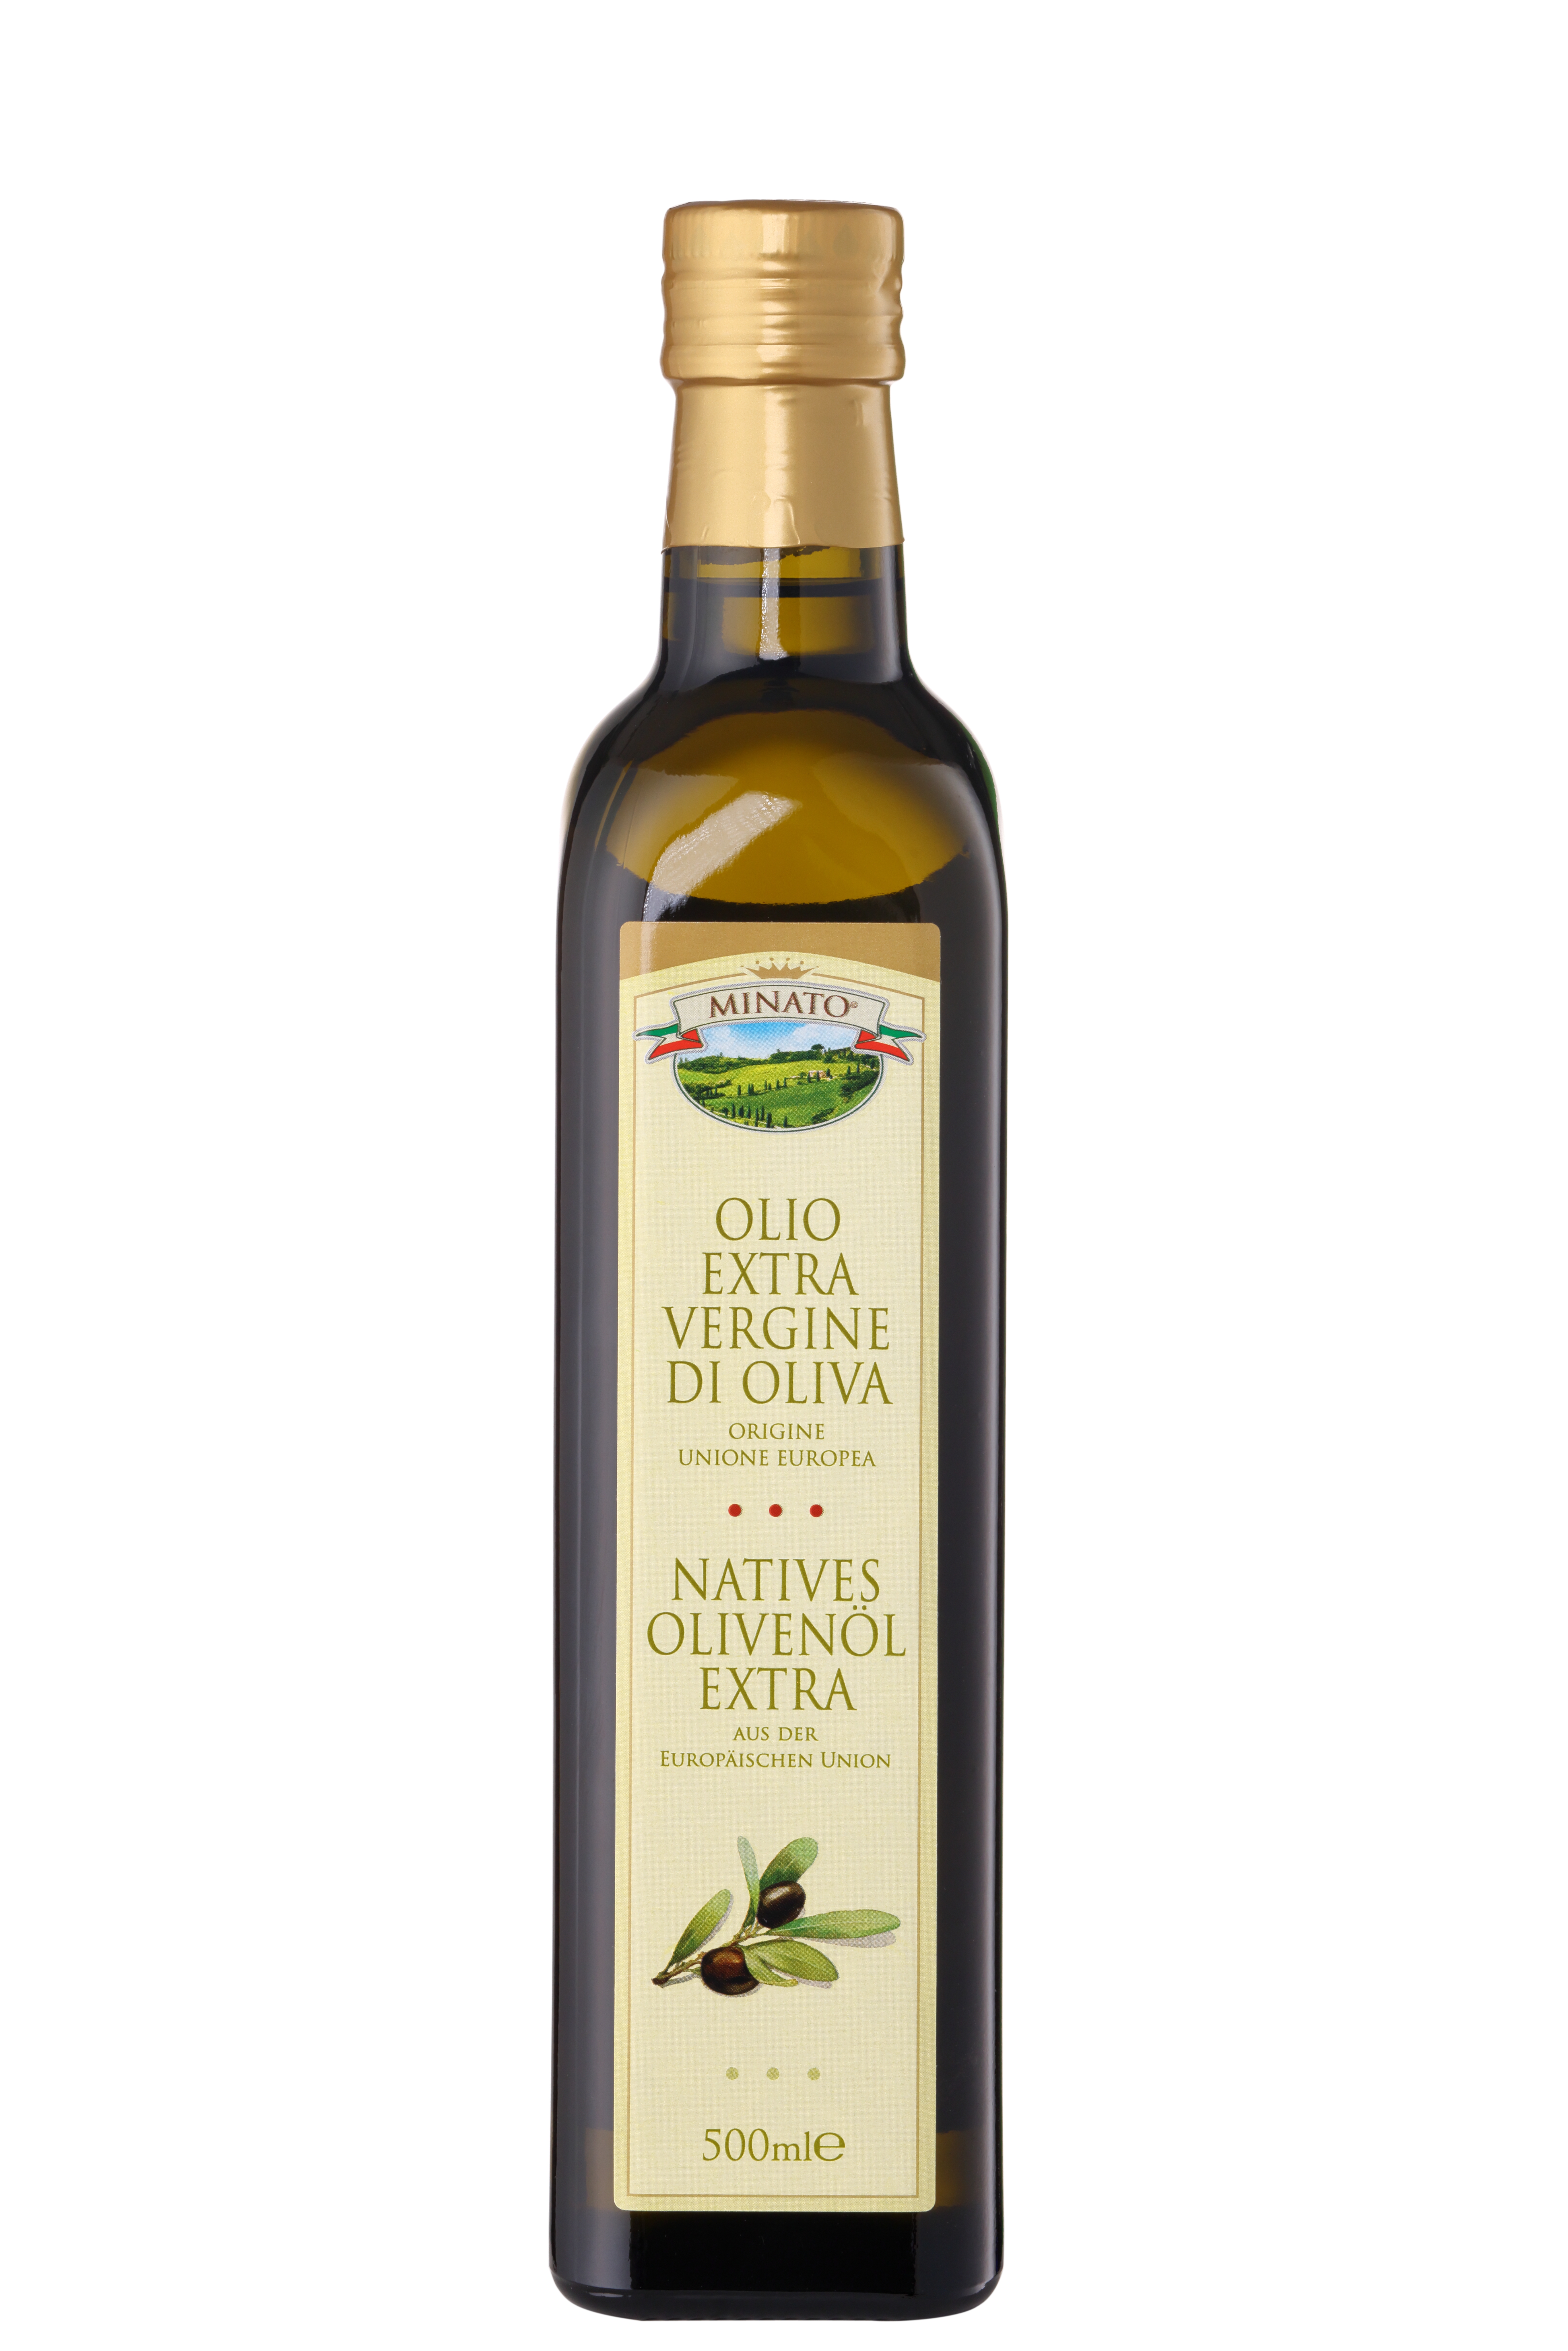 Minato, Natives Olivenöl Extra  500ml